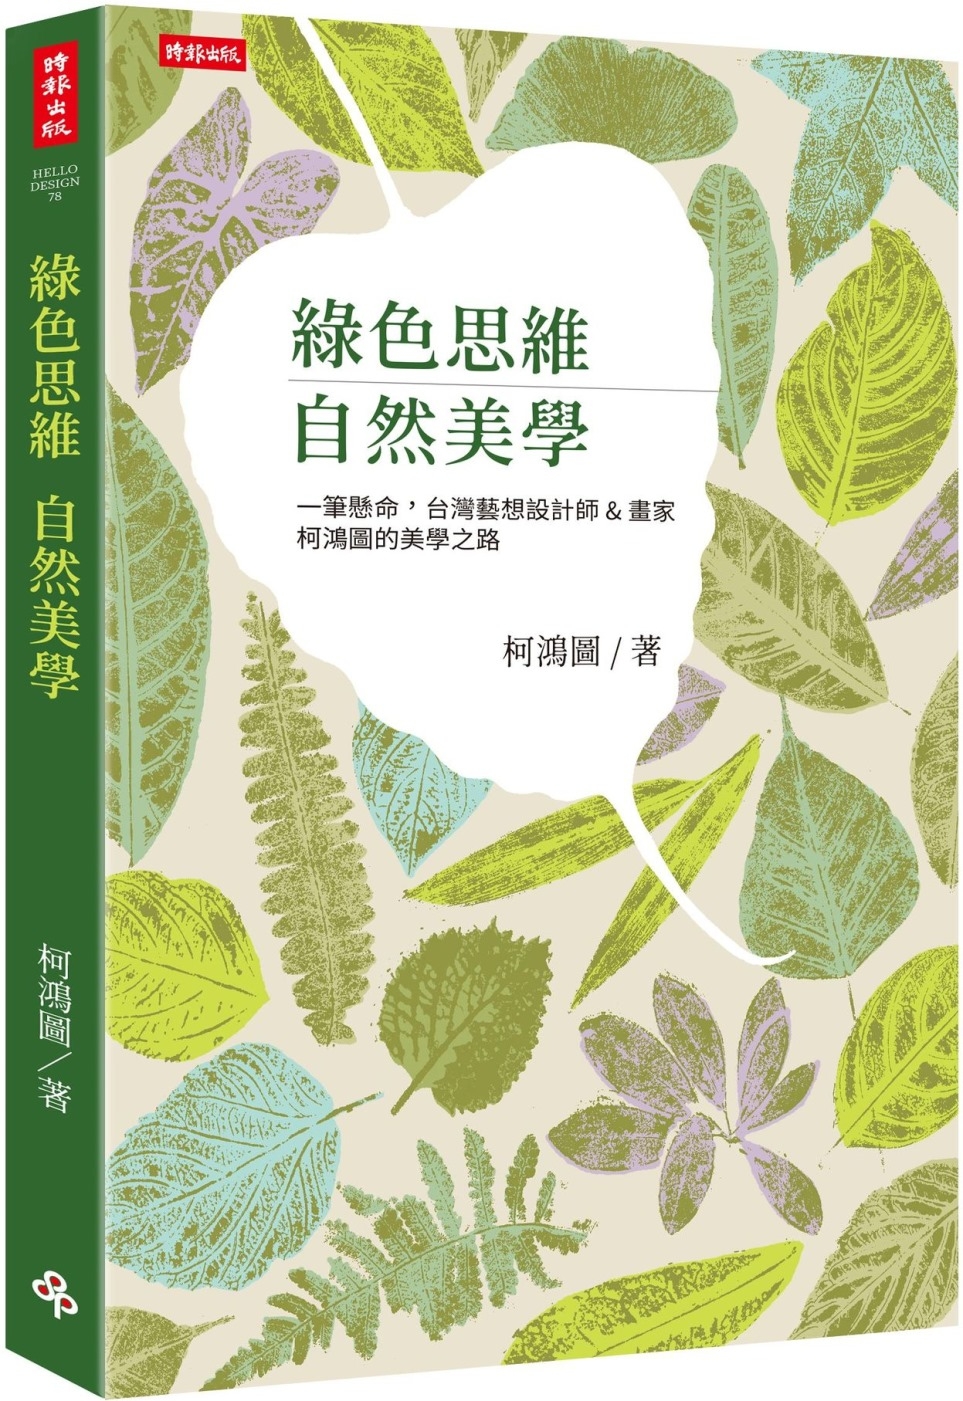 綠色思維 自然美學：一筆懸命，台灣藝想設計師＆畫家柯鴻圖的美...